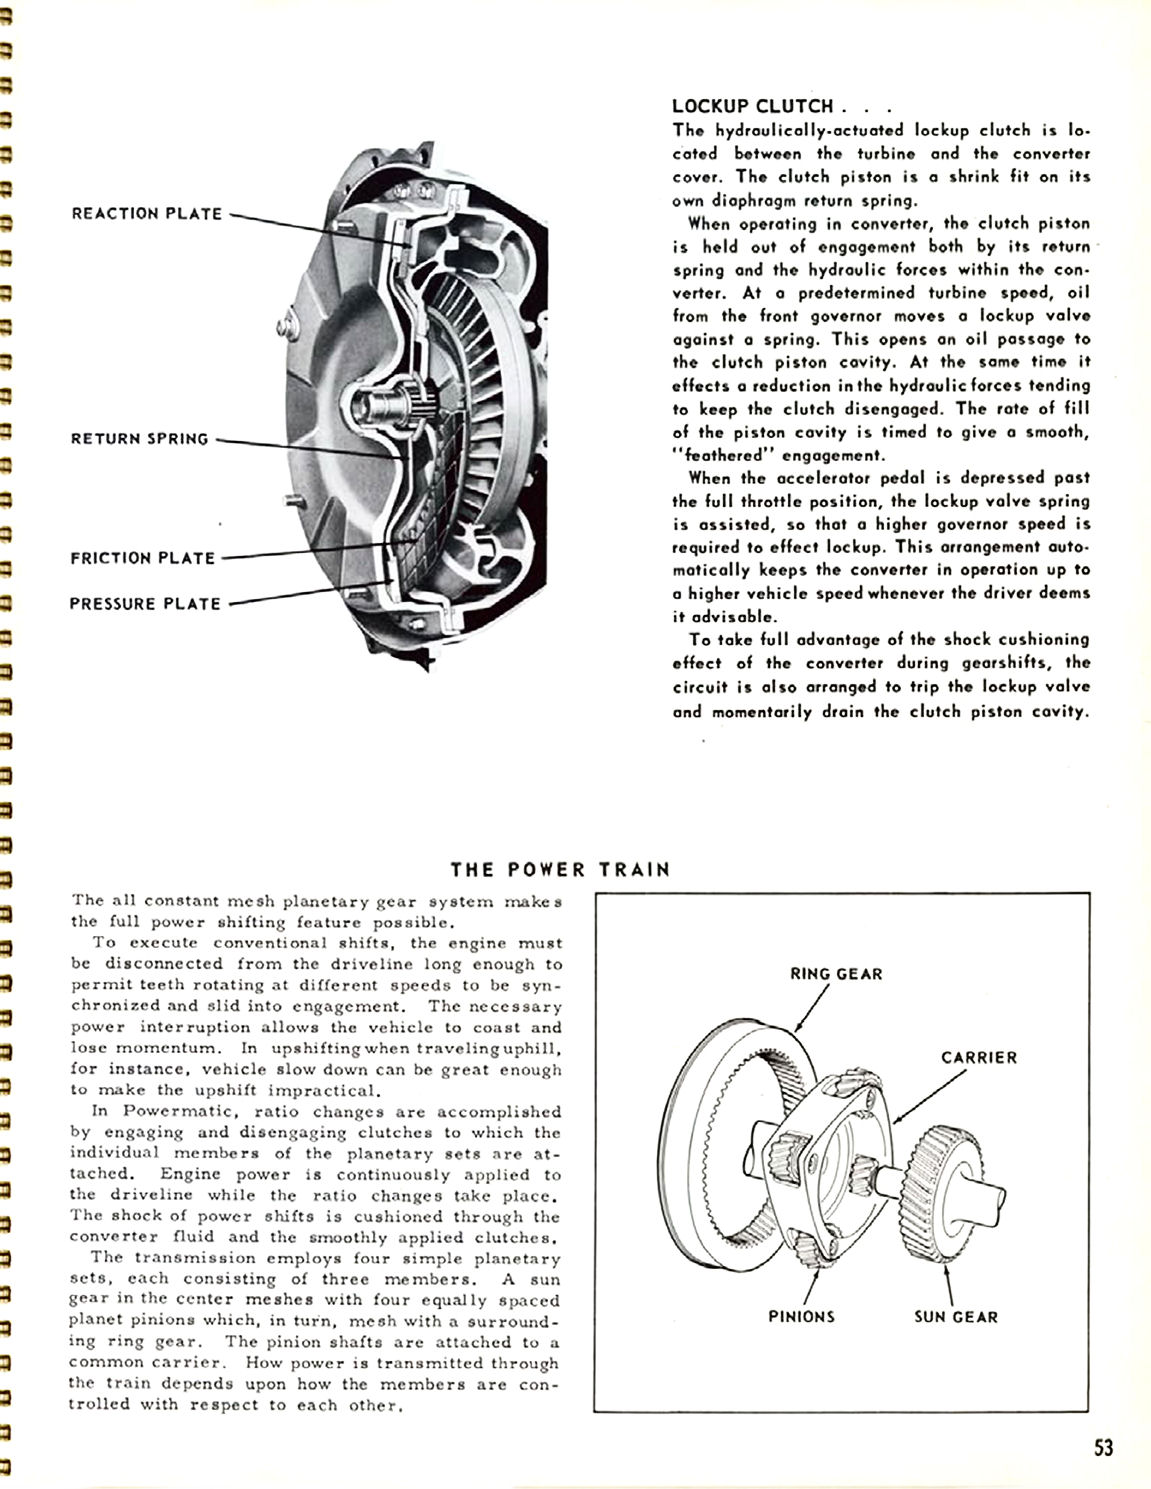 1956_Chevrolet_Truck_Engineering_Features-53